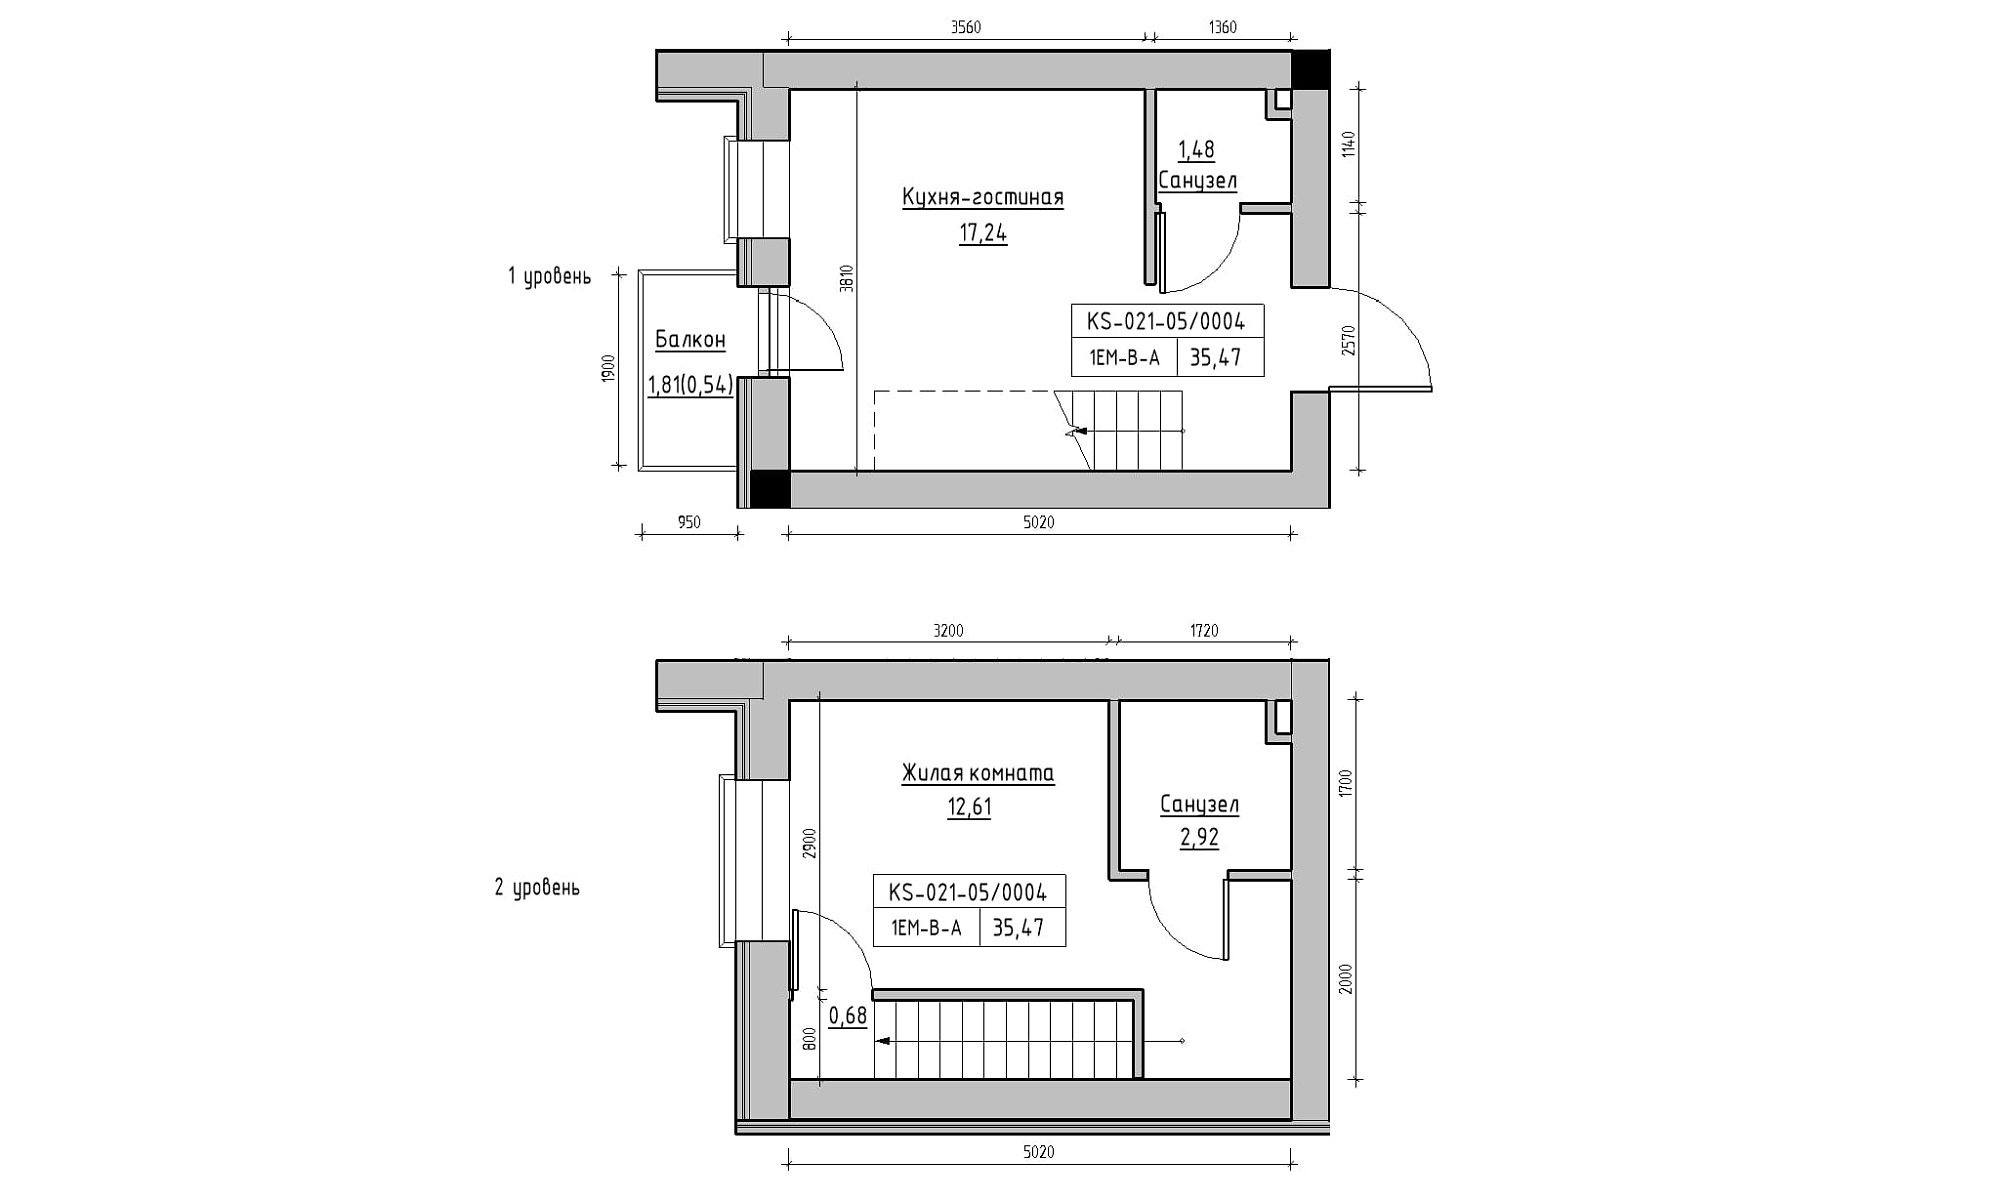 Планировка 2-x уровневая площей 35.47м2, KS-021-05/0004.